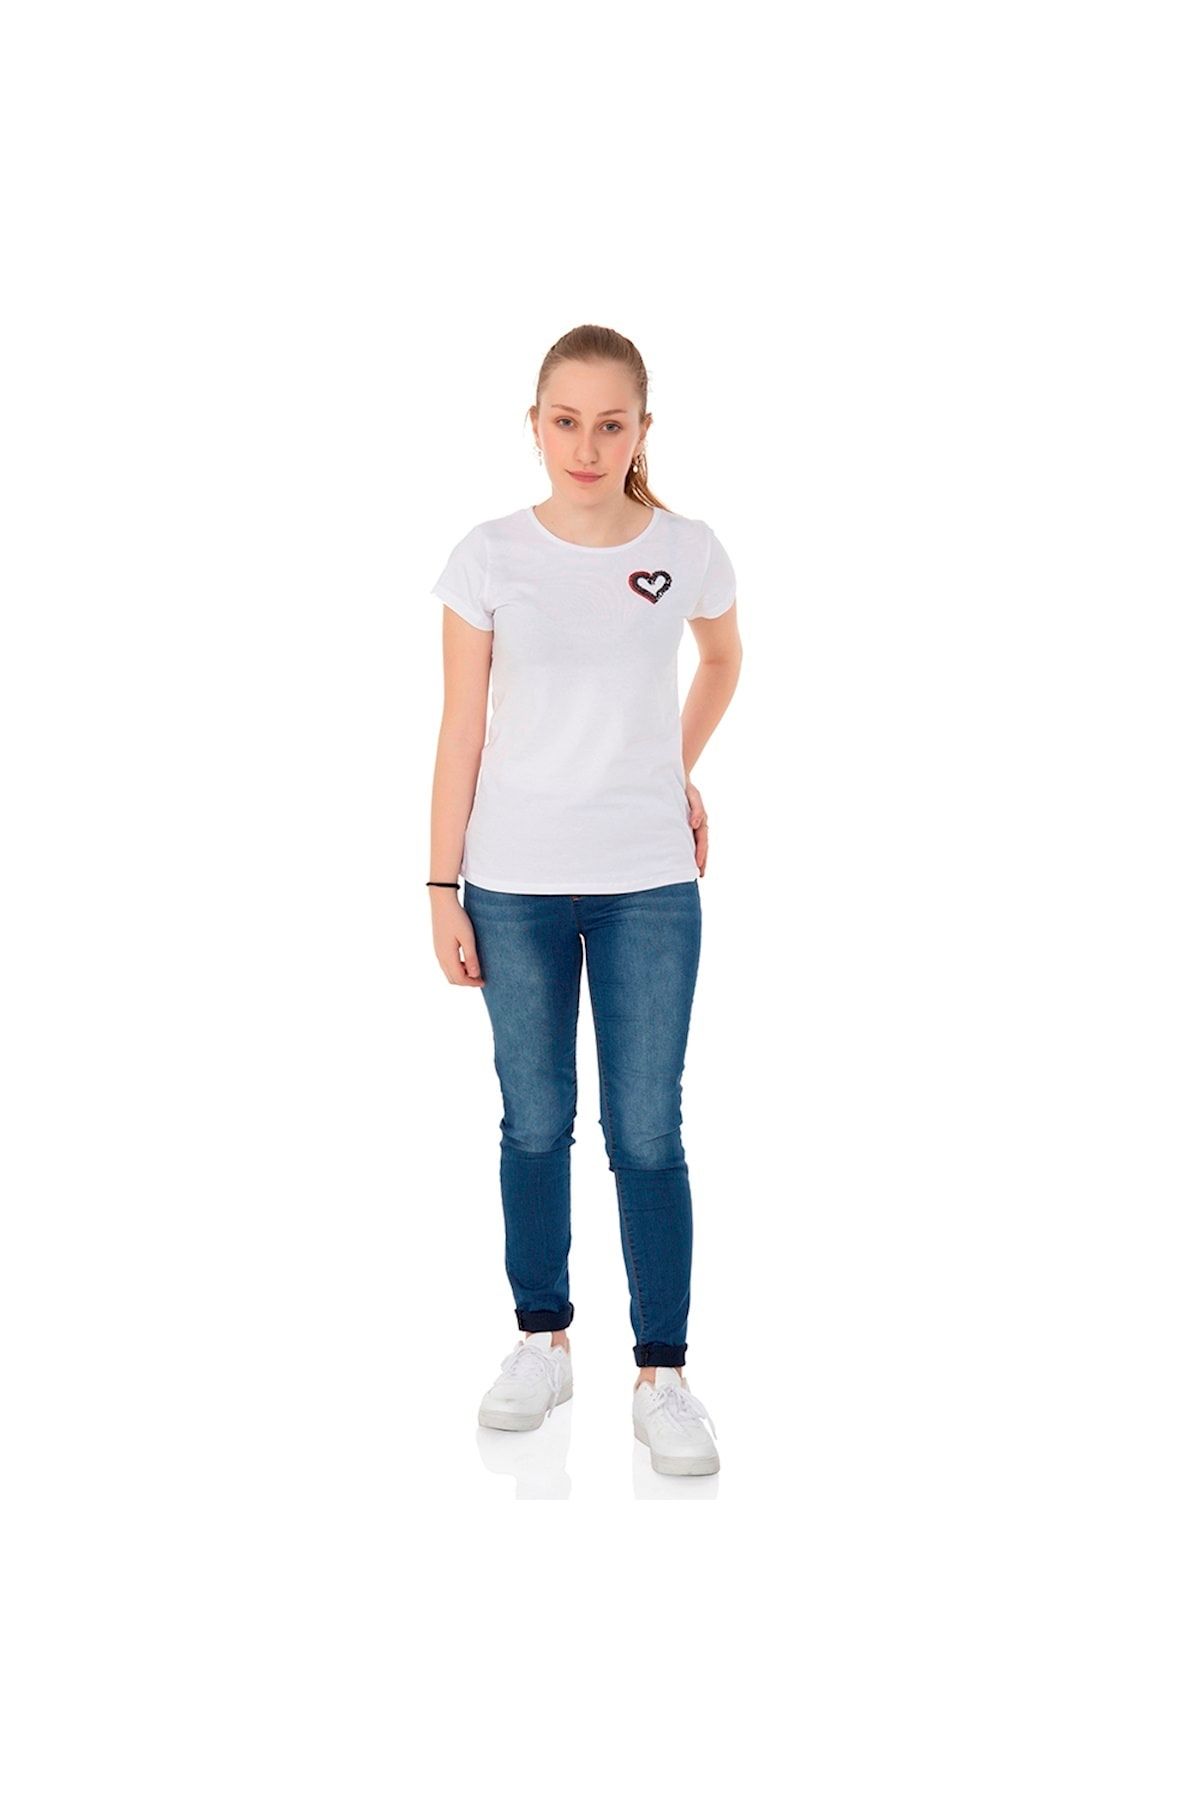 Toontoy Kız Çocuk T-shirt Kalp Nakışlı Beyaz 8 Yaş K-131